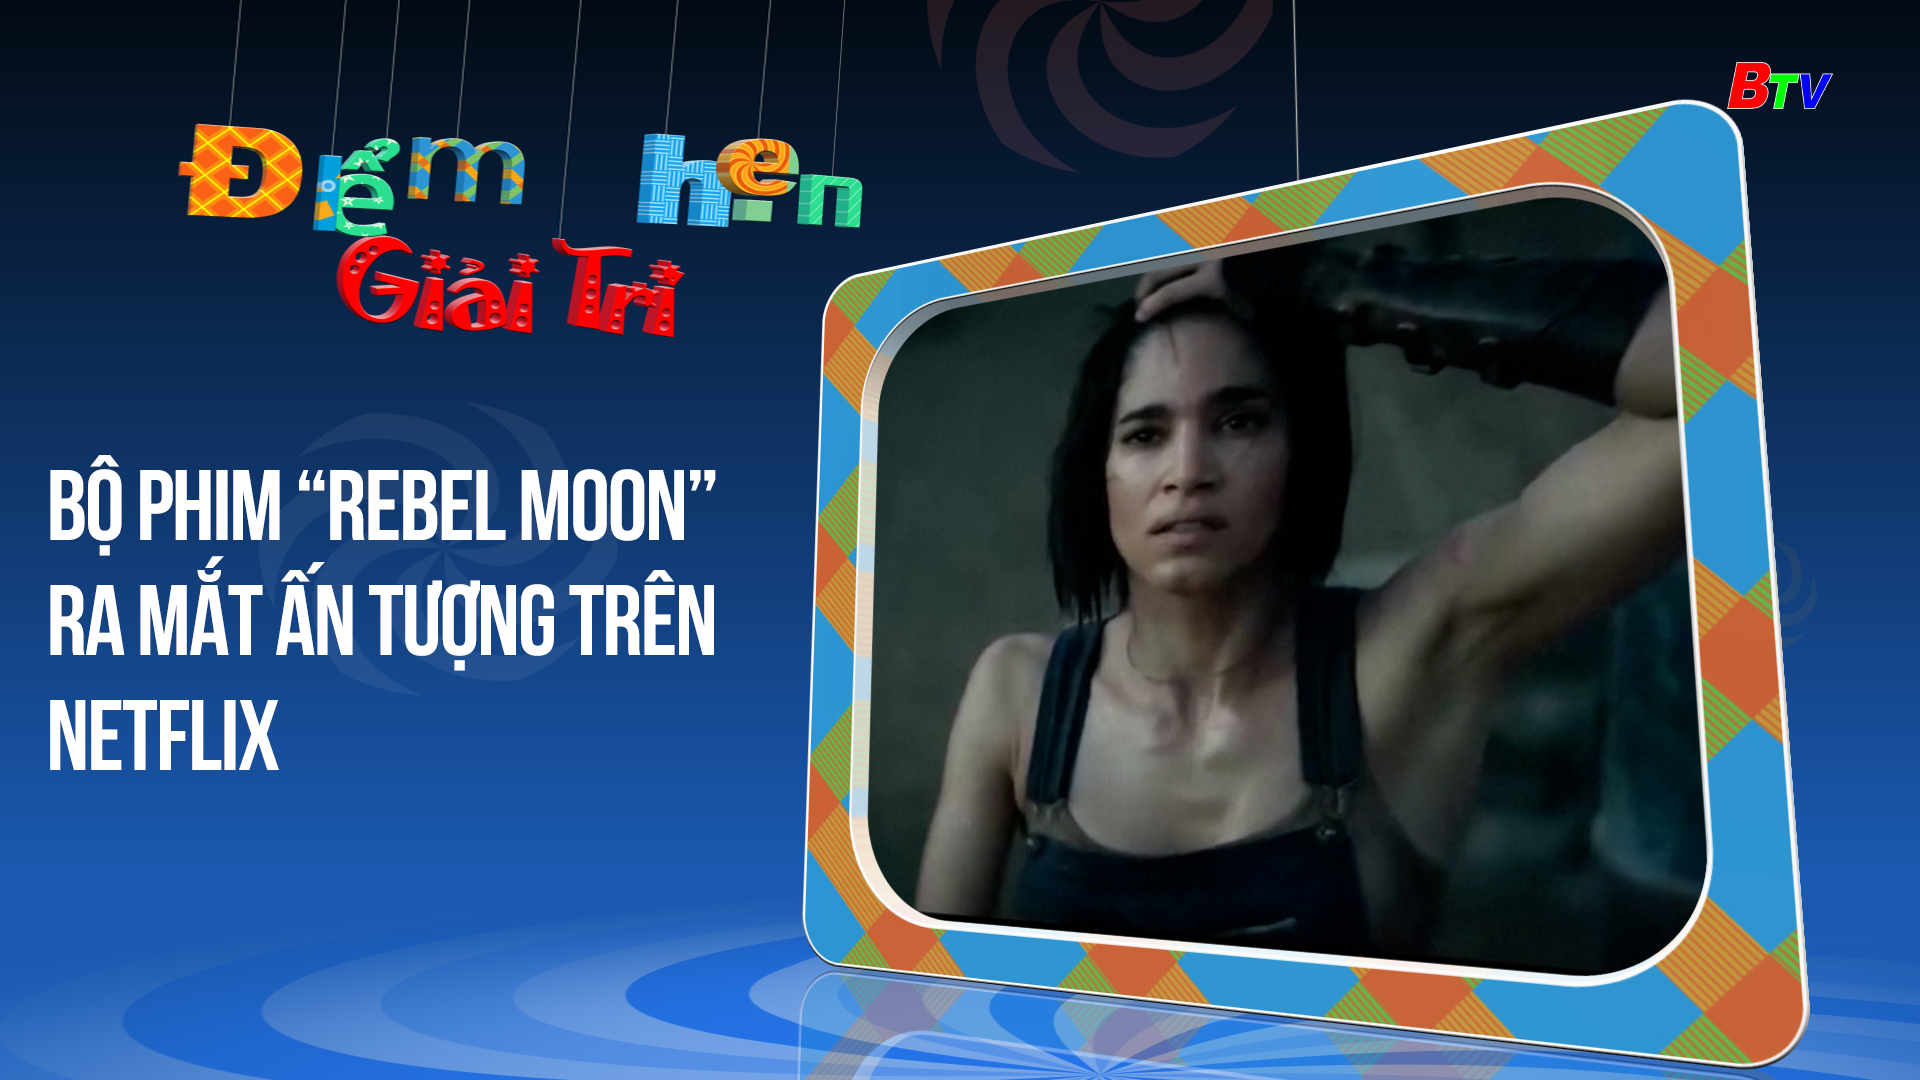 Bộ phim “Rebel Moon” ra mắt ấn tượng trên Netflix | Điểm hẹn giải trí | 2/1/2024